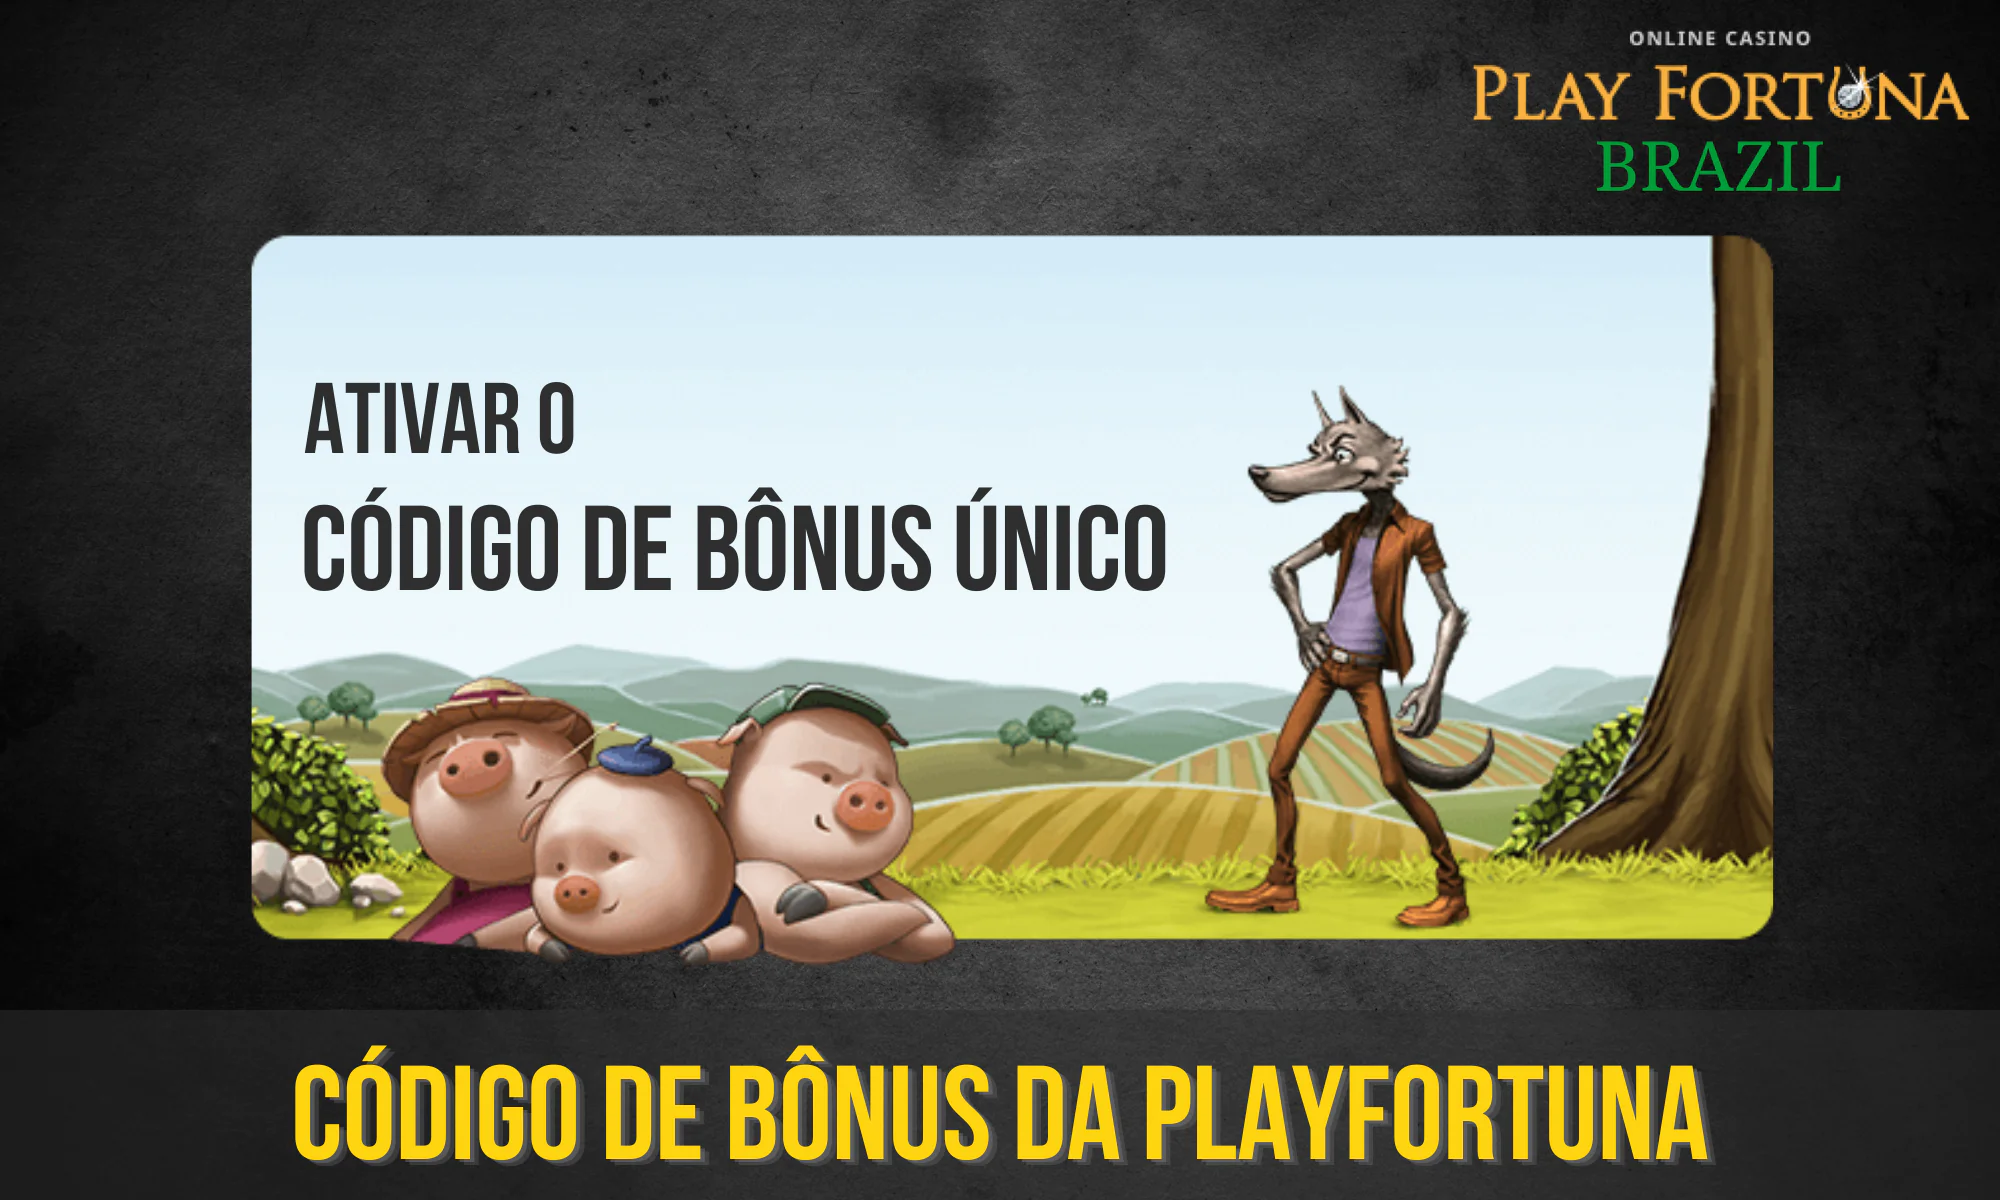 Os códigos de bônus também estão disponíveis para jogadores do Brasil no PlayFortuna